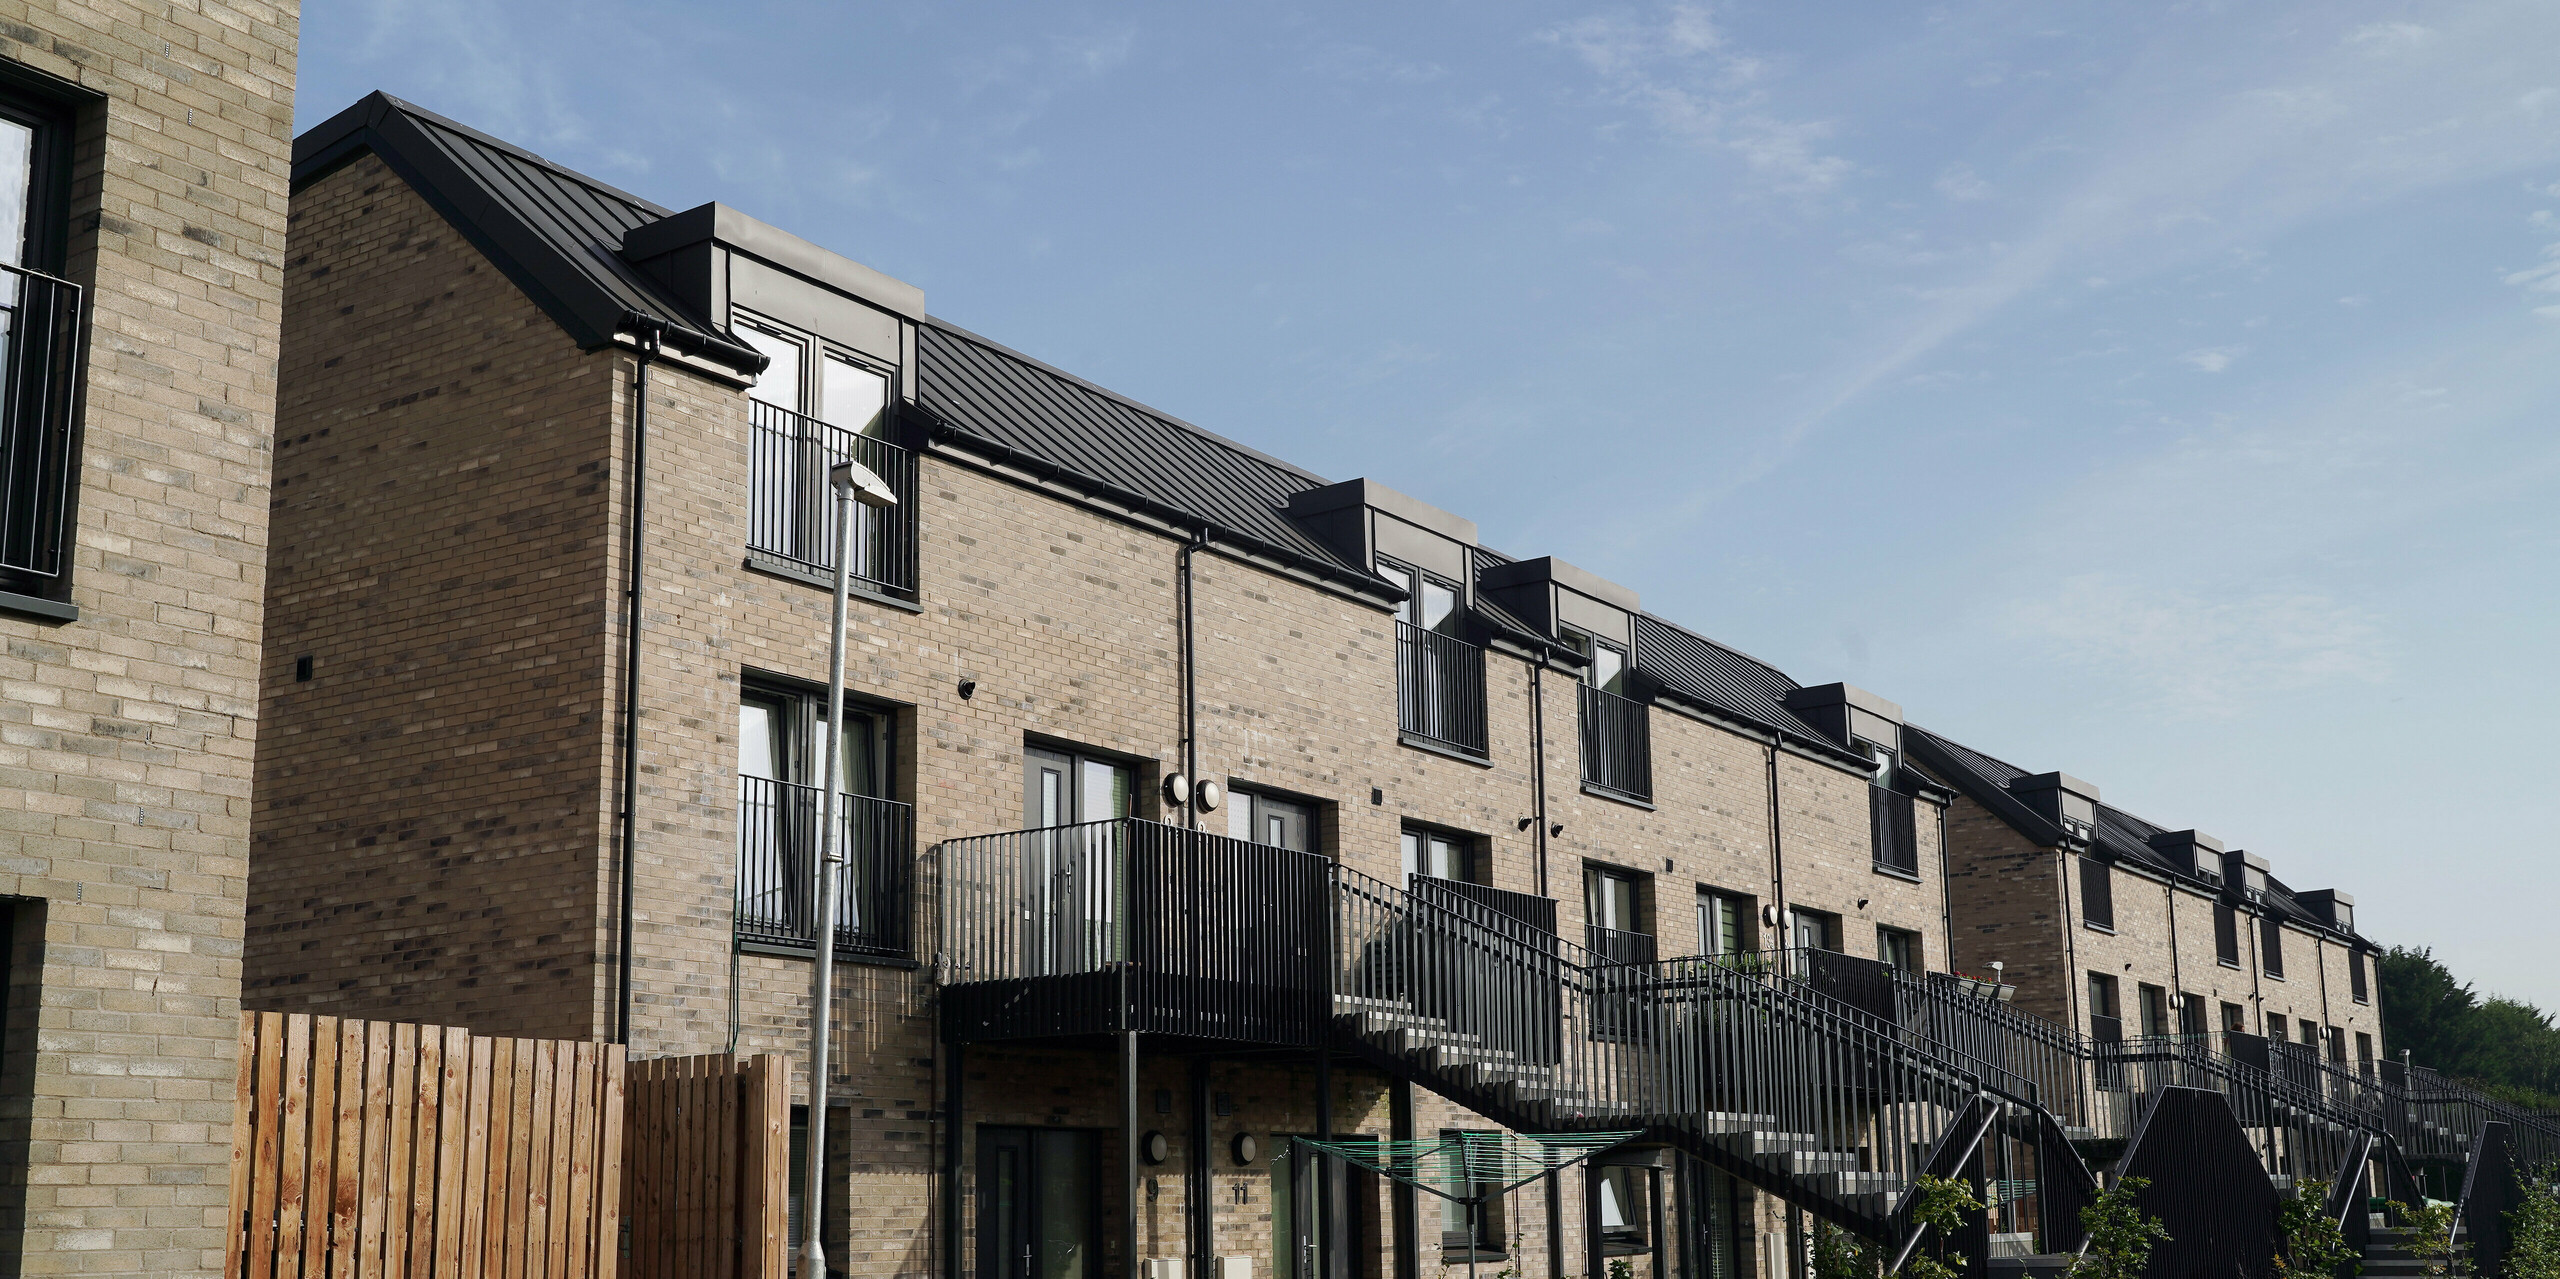 Nahaufnahme einer neu gebauten Wohnhausanlage in der Bingham Avenue, Edinburgh, mit PREFALZ Dächern in P.10 Dunkelgrau. Die dunklen Aluminiumdächer bieten einen ansprechenden Kontrast zu den hellen Ziegelmauern der Gebäude. Die einzelnen Wohnungen verfügen über einen Balkon bzw. Vorgarten. Die Stiegen sind mit schwarzen Geländern ausgestattet, die ein modernes und stilvolles Erscheinungsbild vermitteln. Die Vordergärten sind mit jungen Bäumen bepflanzt, was zur ästhetischen und ökologischen Qualität des Wohnkomplexes beiträgt.